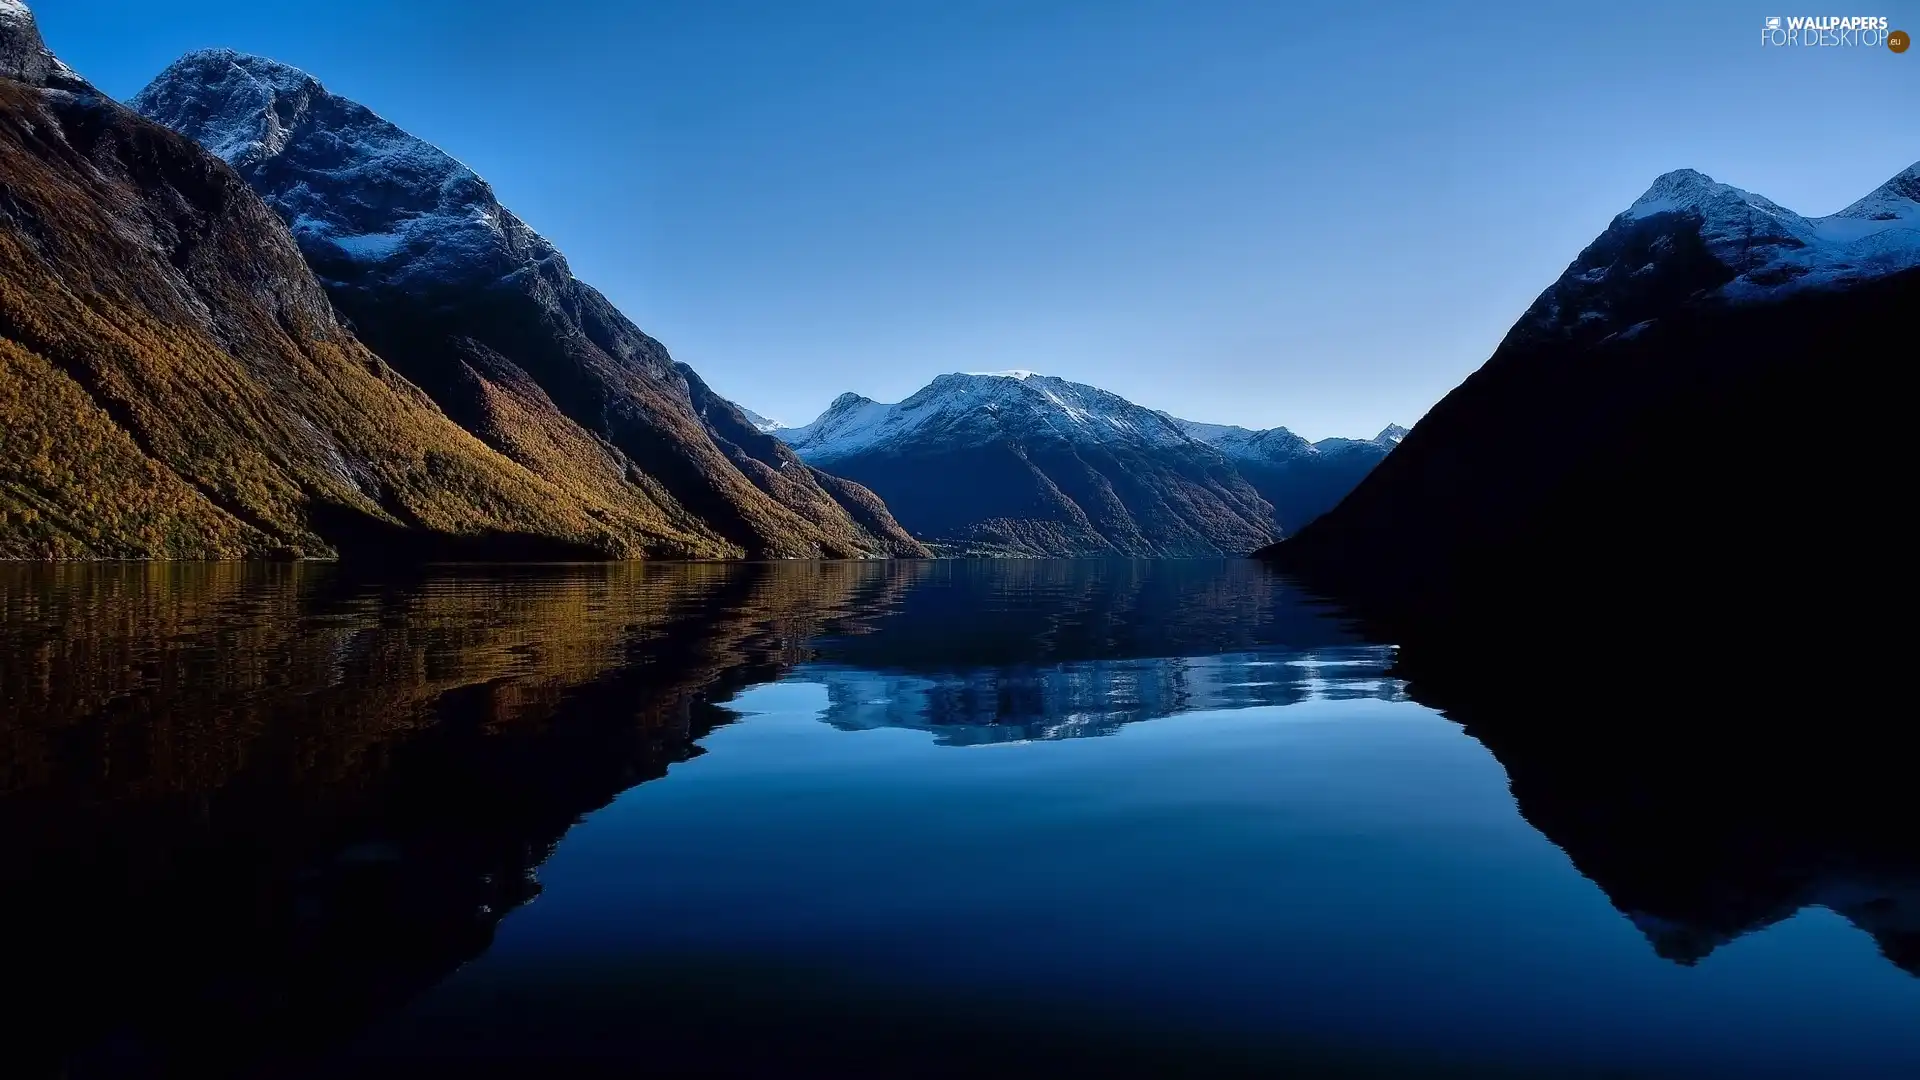 Mountains, Water Pane, reflection, lake